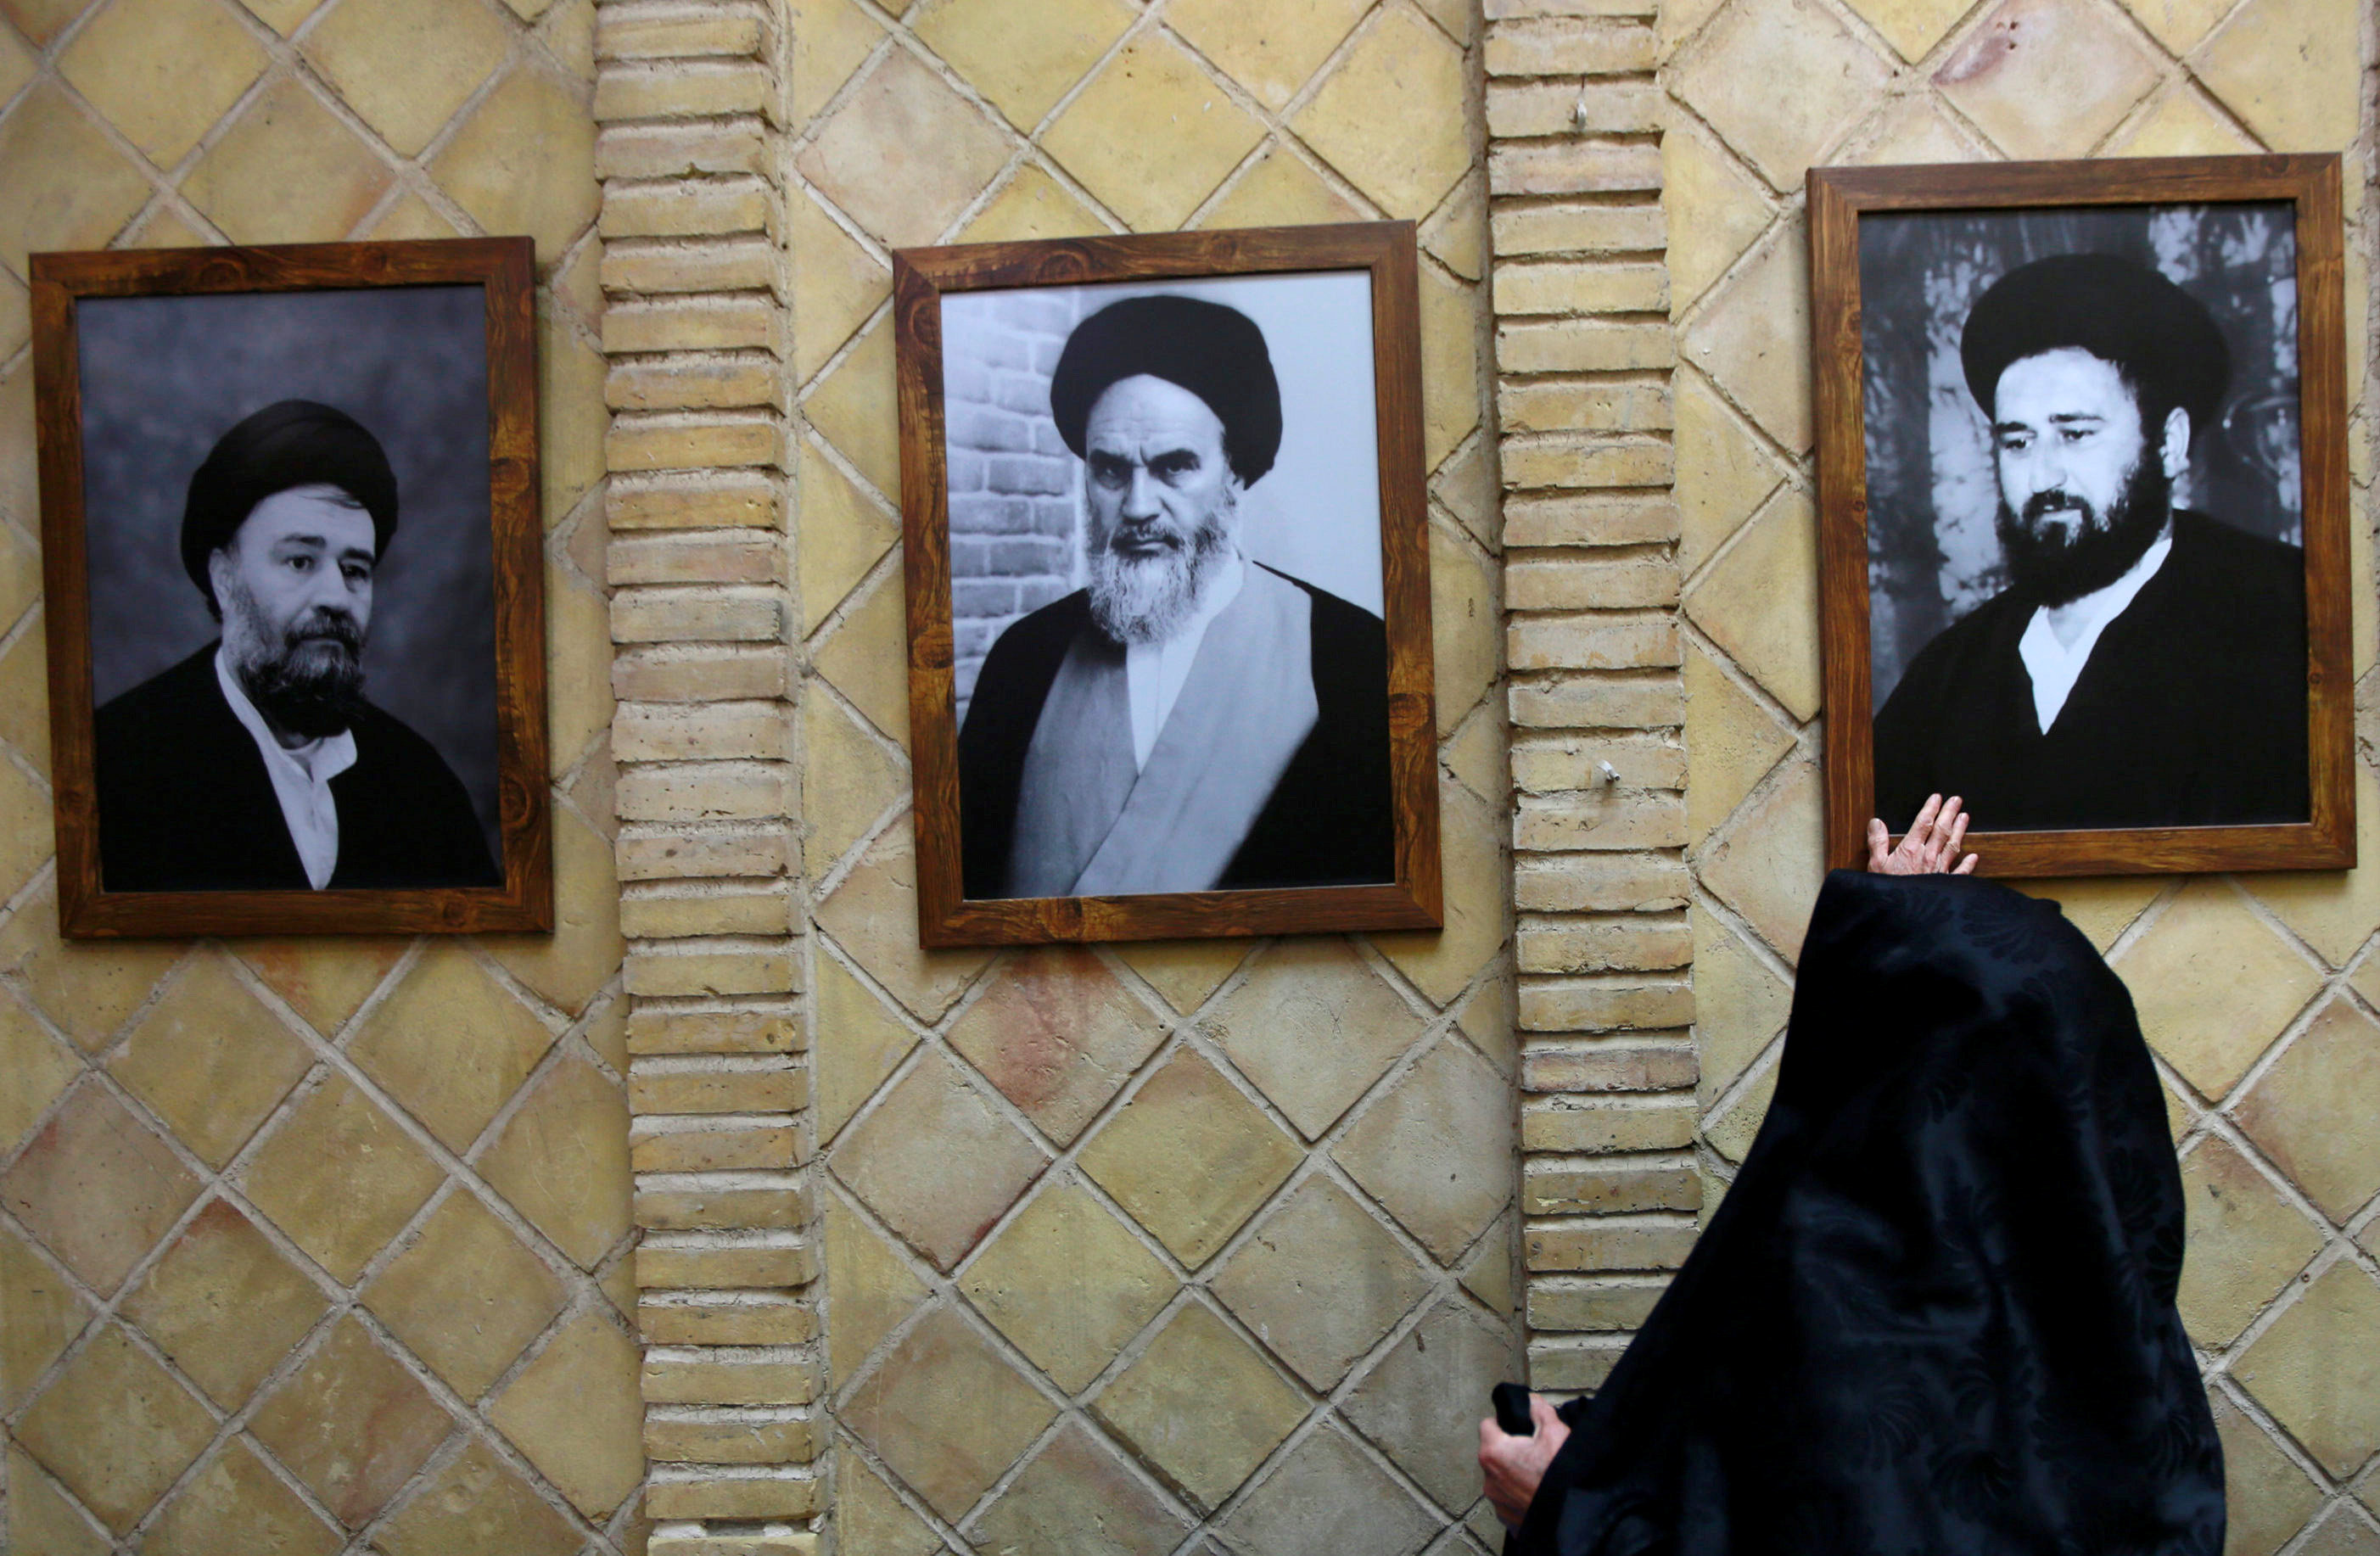 سيدة إيرانية تتبرك بصورة أحد مرشدى الثورة الإيرانية بمنزل الخمينى